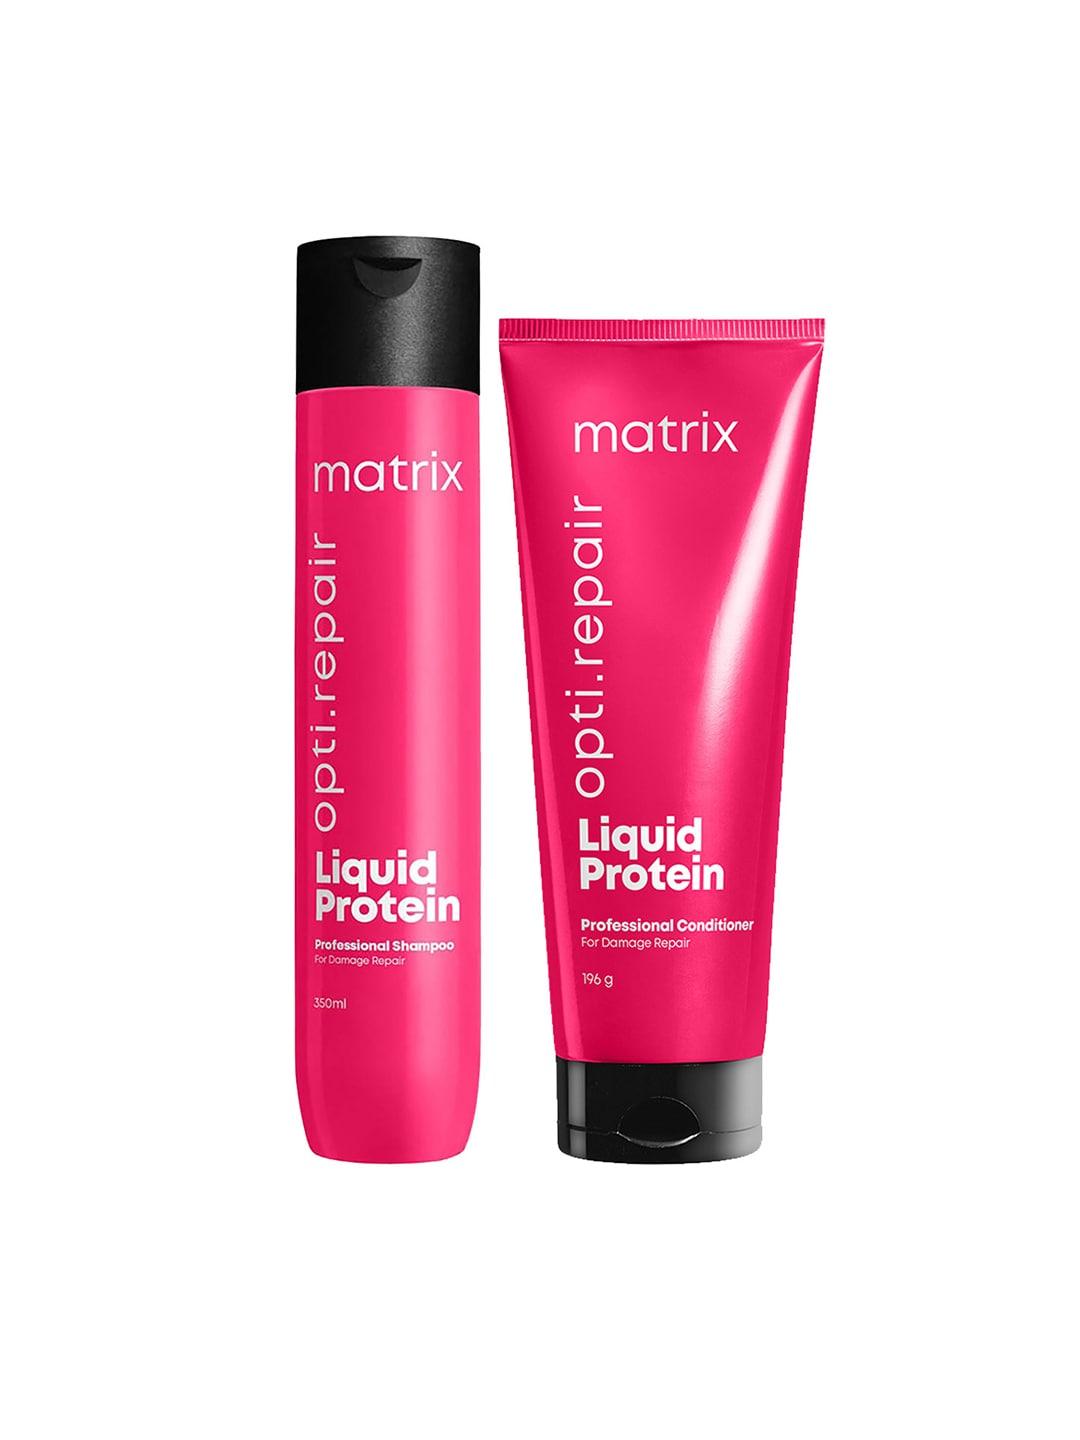 MATRIX Opti Repair Liquid Protein Professional Shampoo 350ml & Conditioner 196g